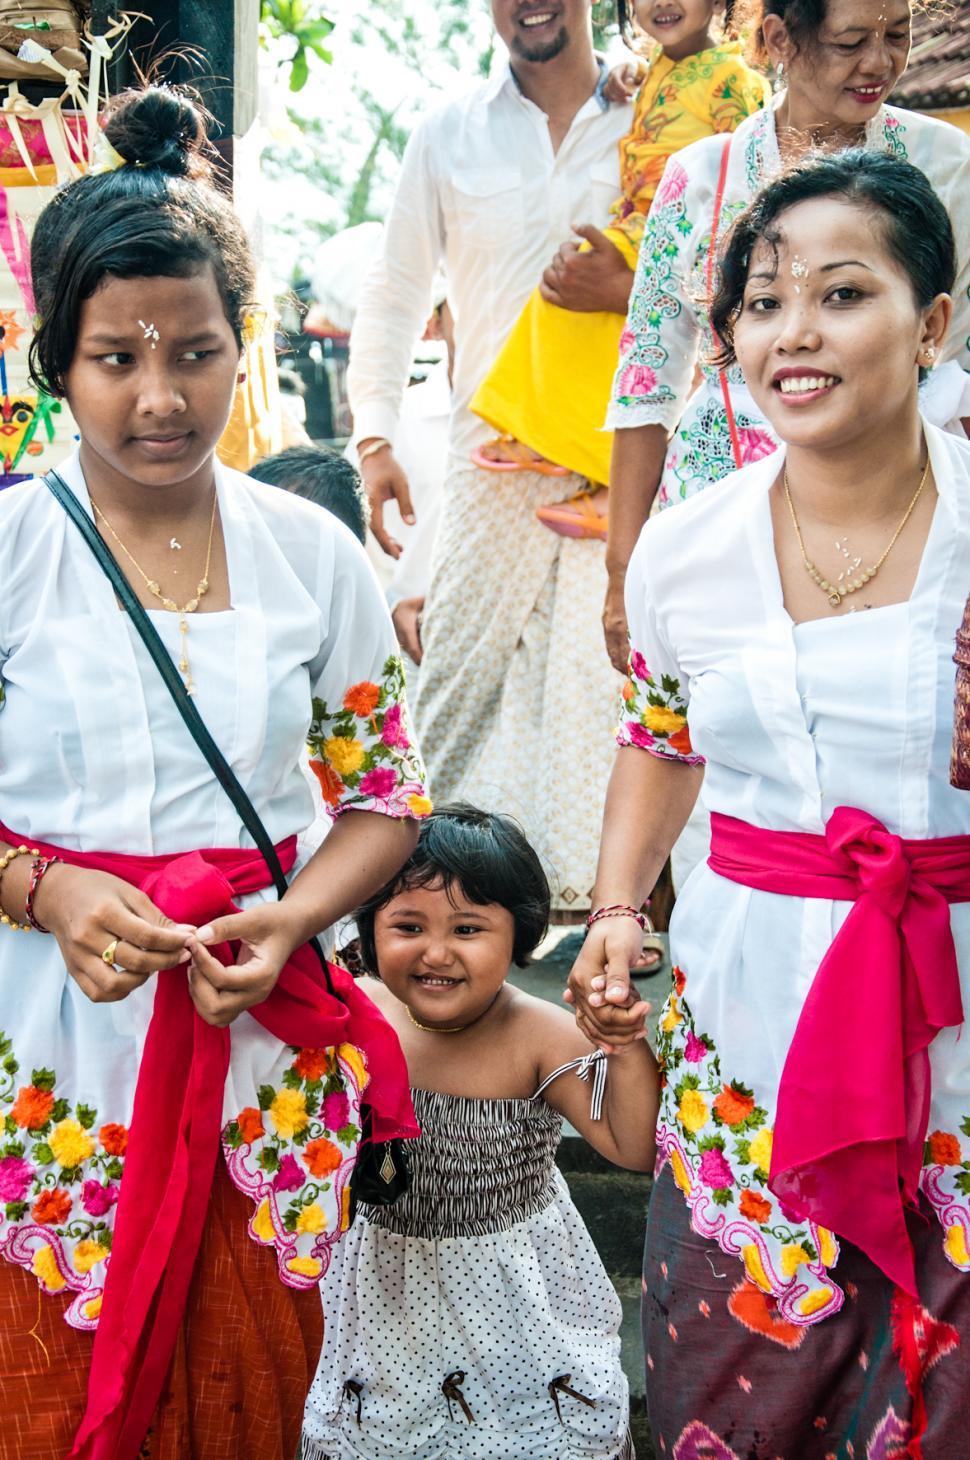 Free Image of Balinese family at hindu celebration 